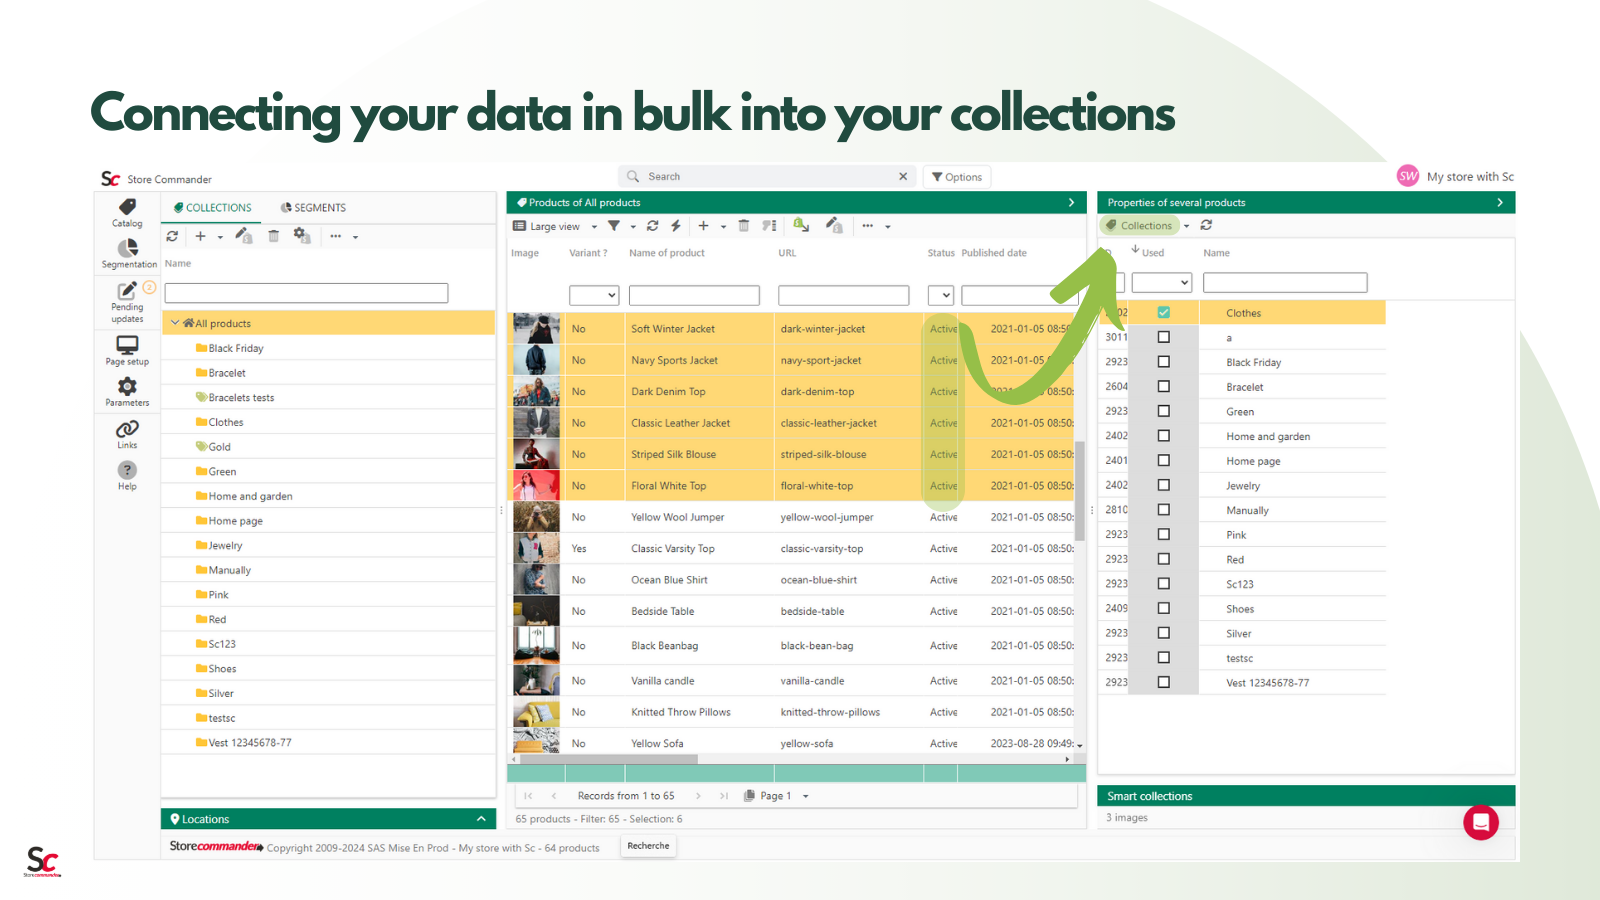 Verbinden Sie Ihre Daten in großen Mengen mit Ihren Kollektionen in nur wenigen Klicks